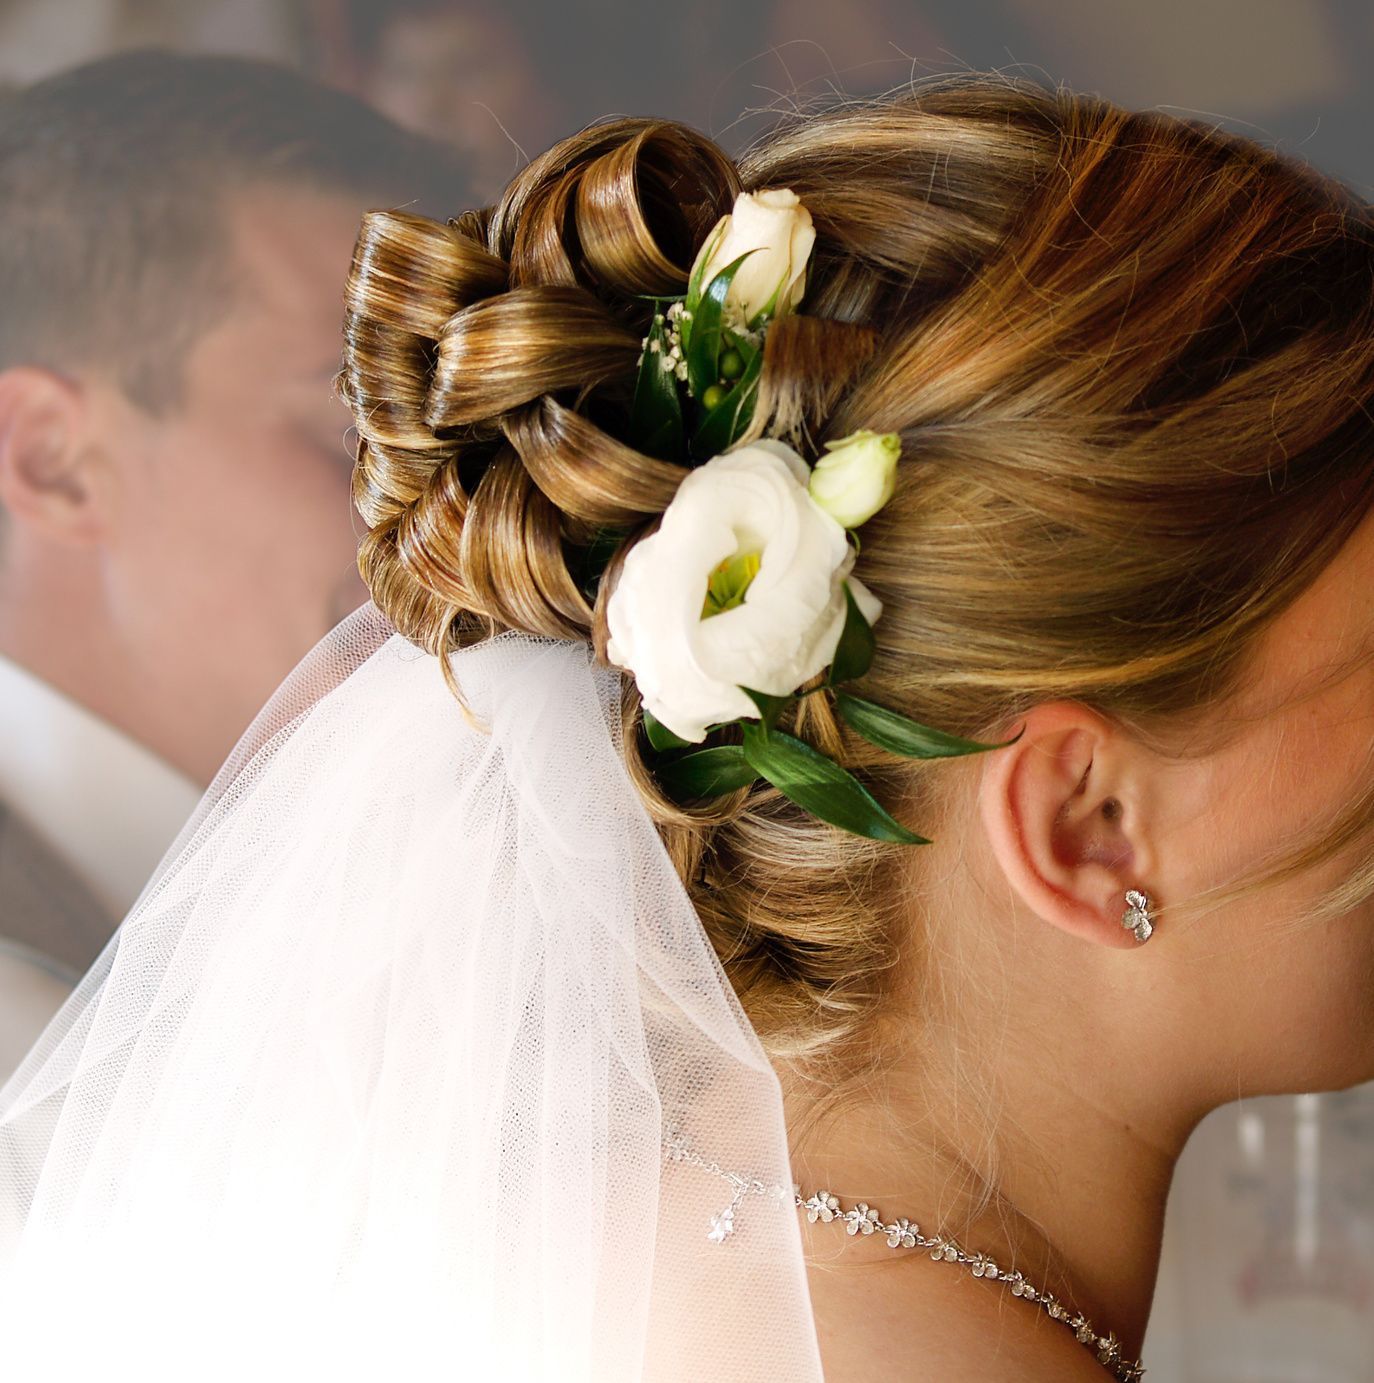 Romantisch und natürlich: Blumen im Haar lockern die Brautfrisur auf.